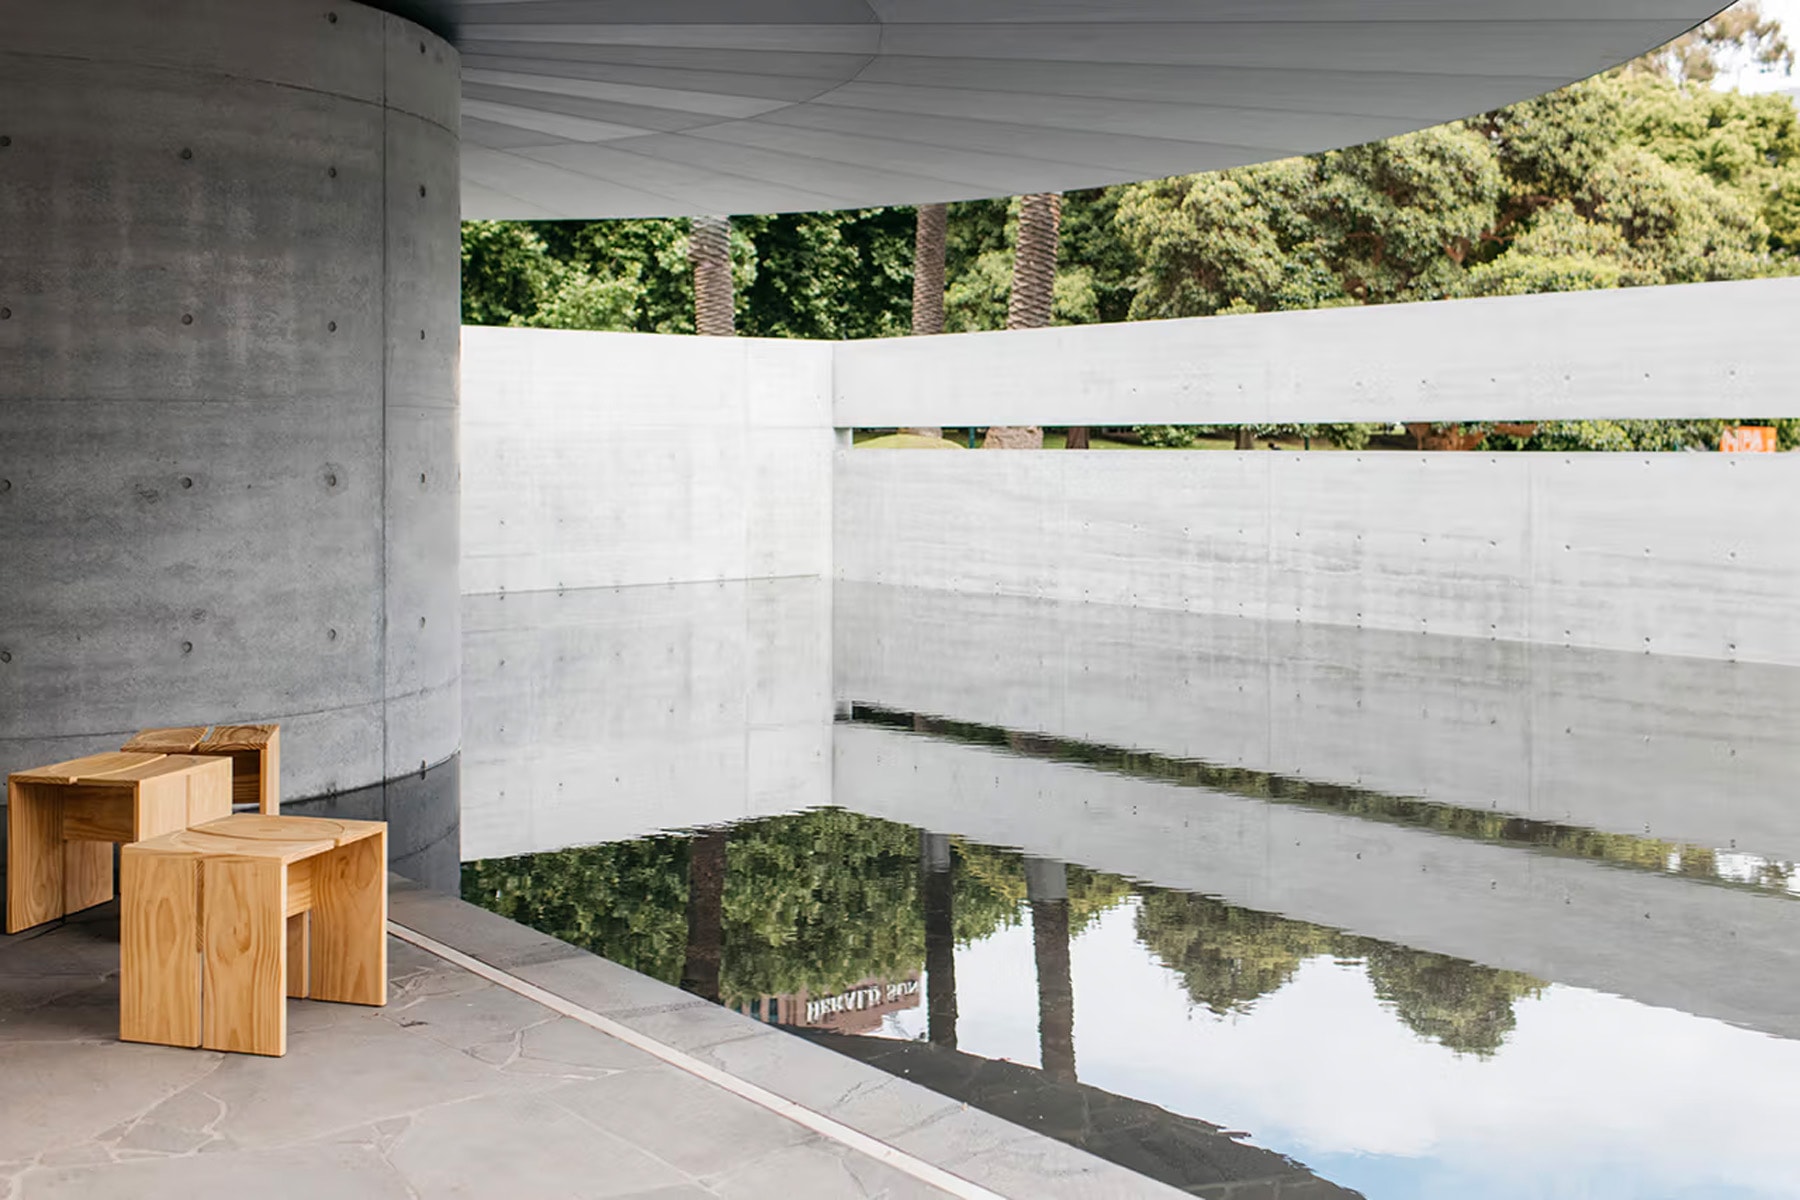 傳奇建築師安藤忠雄設計之花園涼亭正式開放參觀